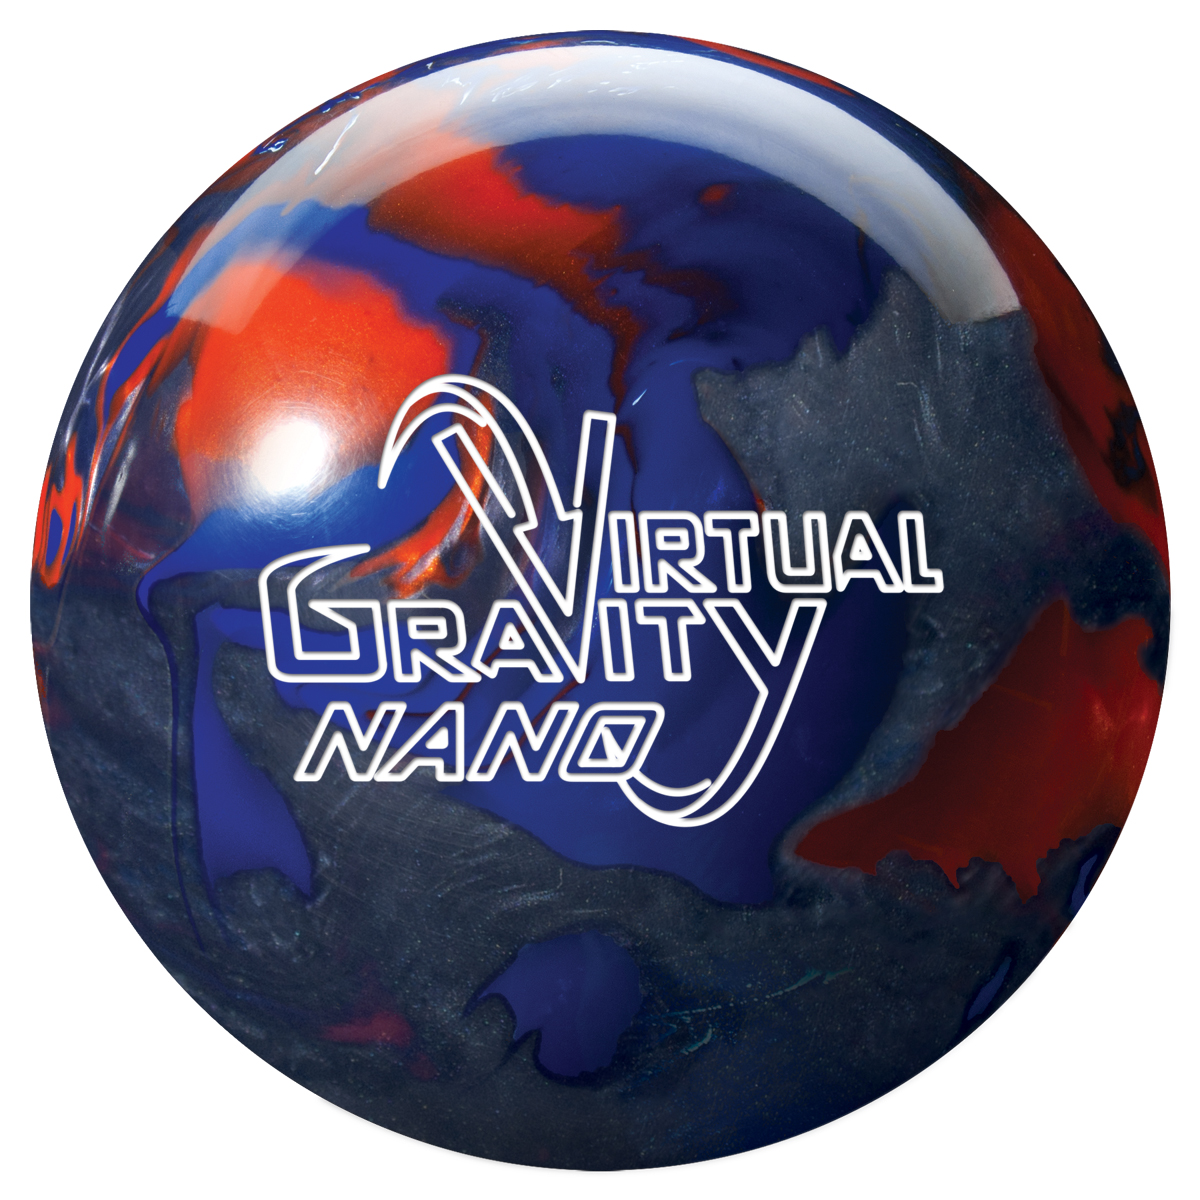 Storm Frantic and Virtual Gravity Nano Pearl Ball Reviews